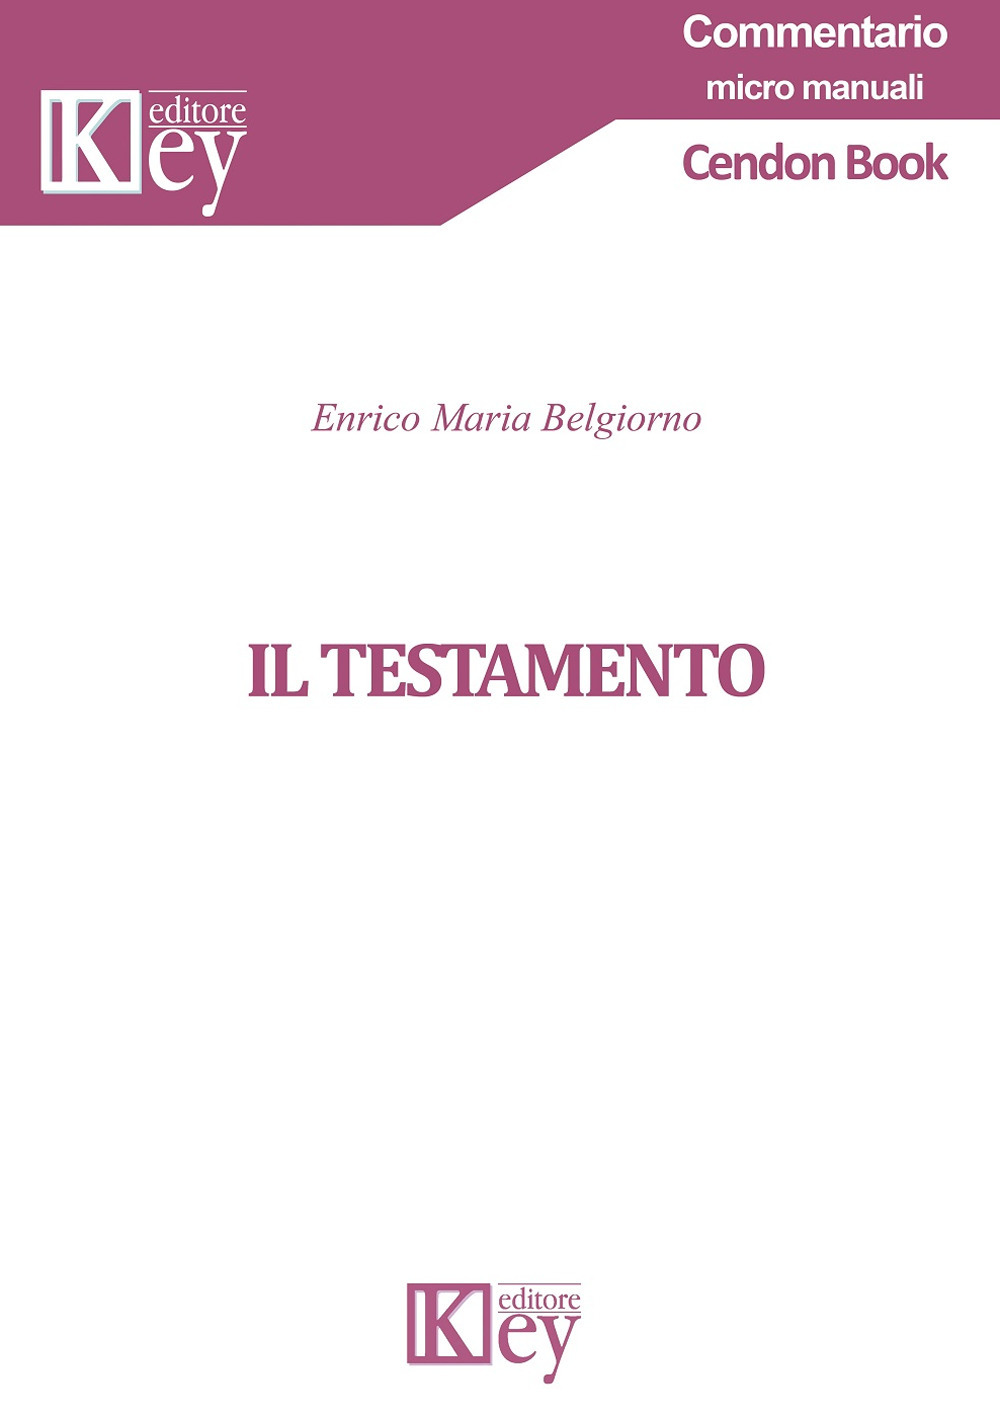 Libri Belgiorno Enrico Maria - Il Testamento NUOVO SIGILLATO, EDIZIONE DEL 04/04/2019 SUBITO DISPONIBILE